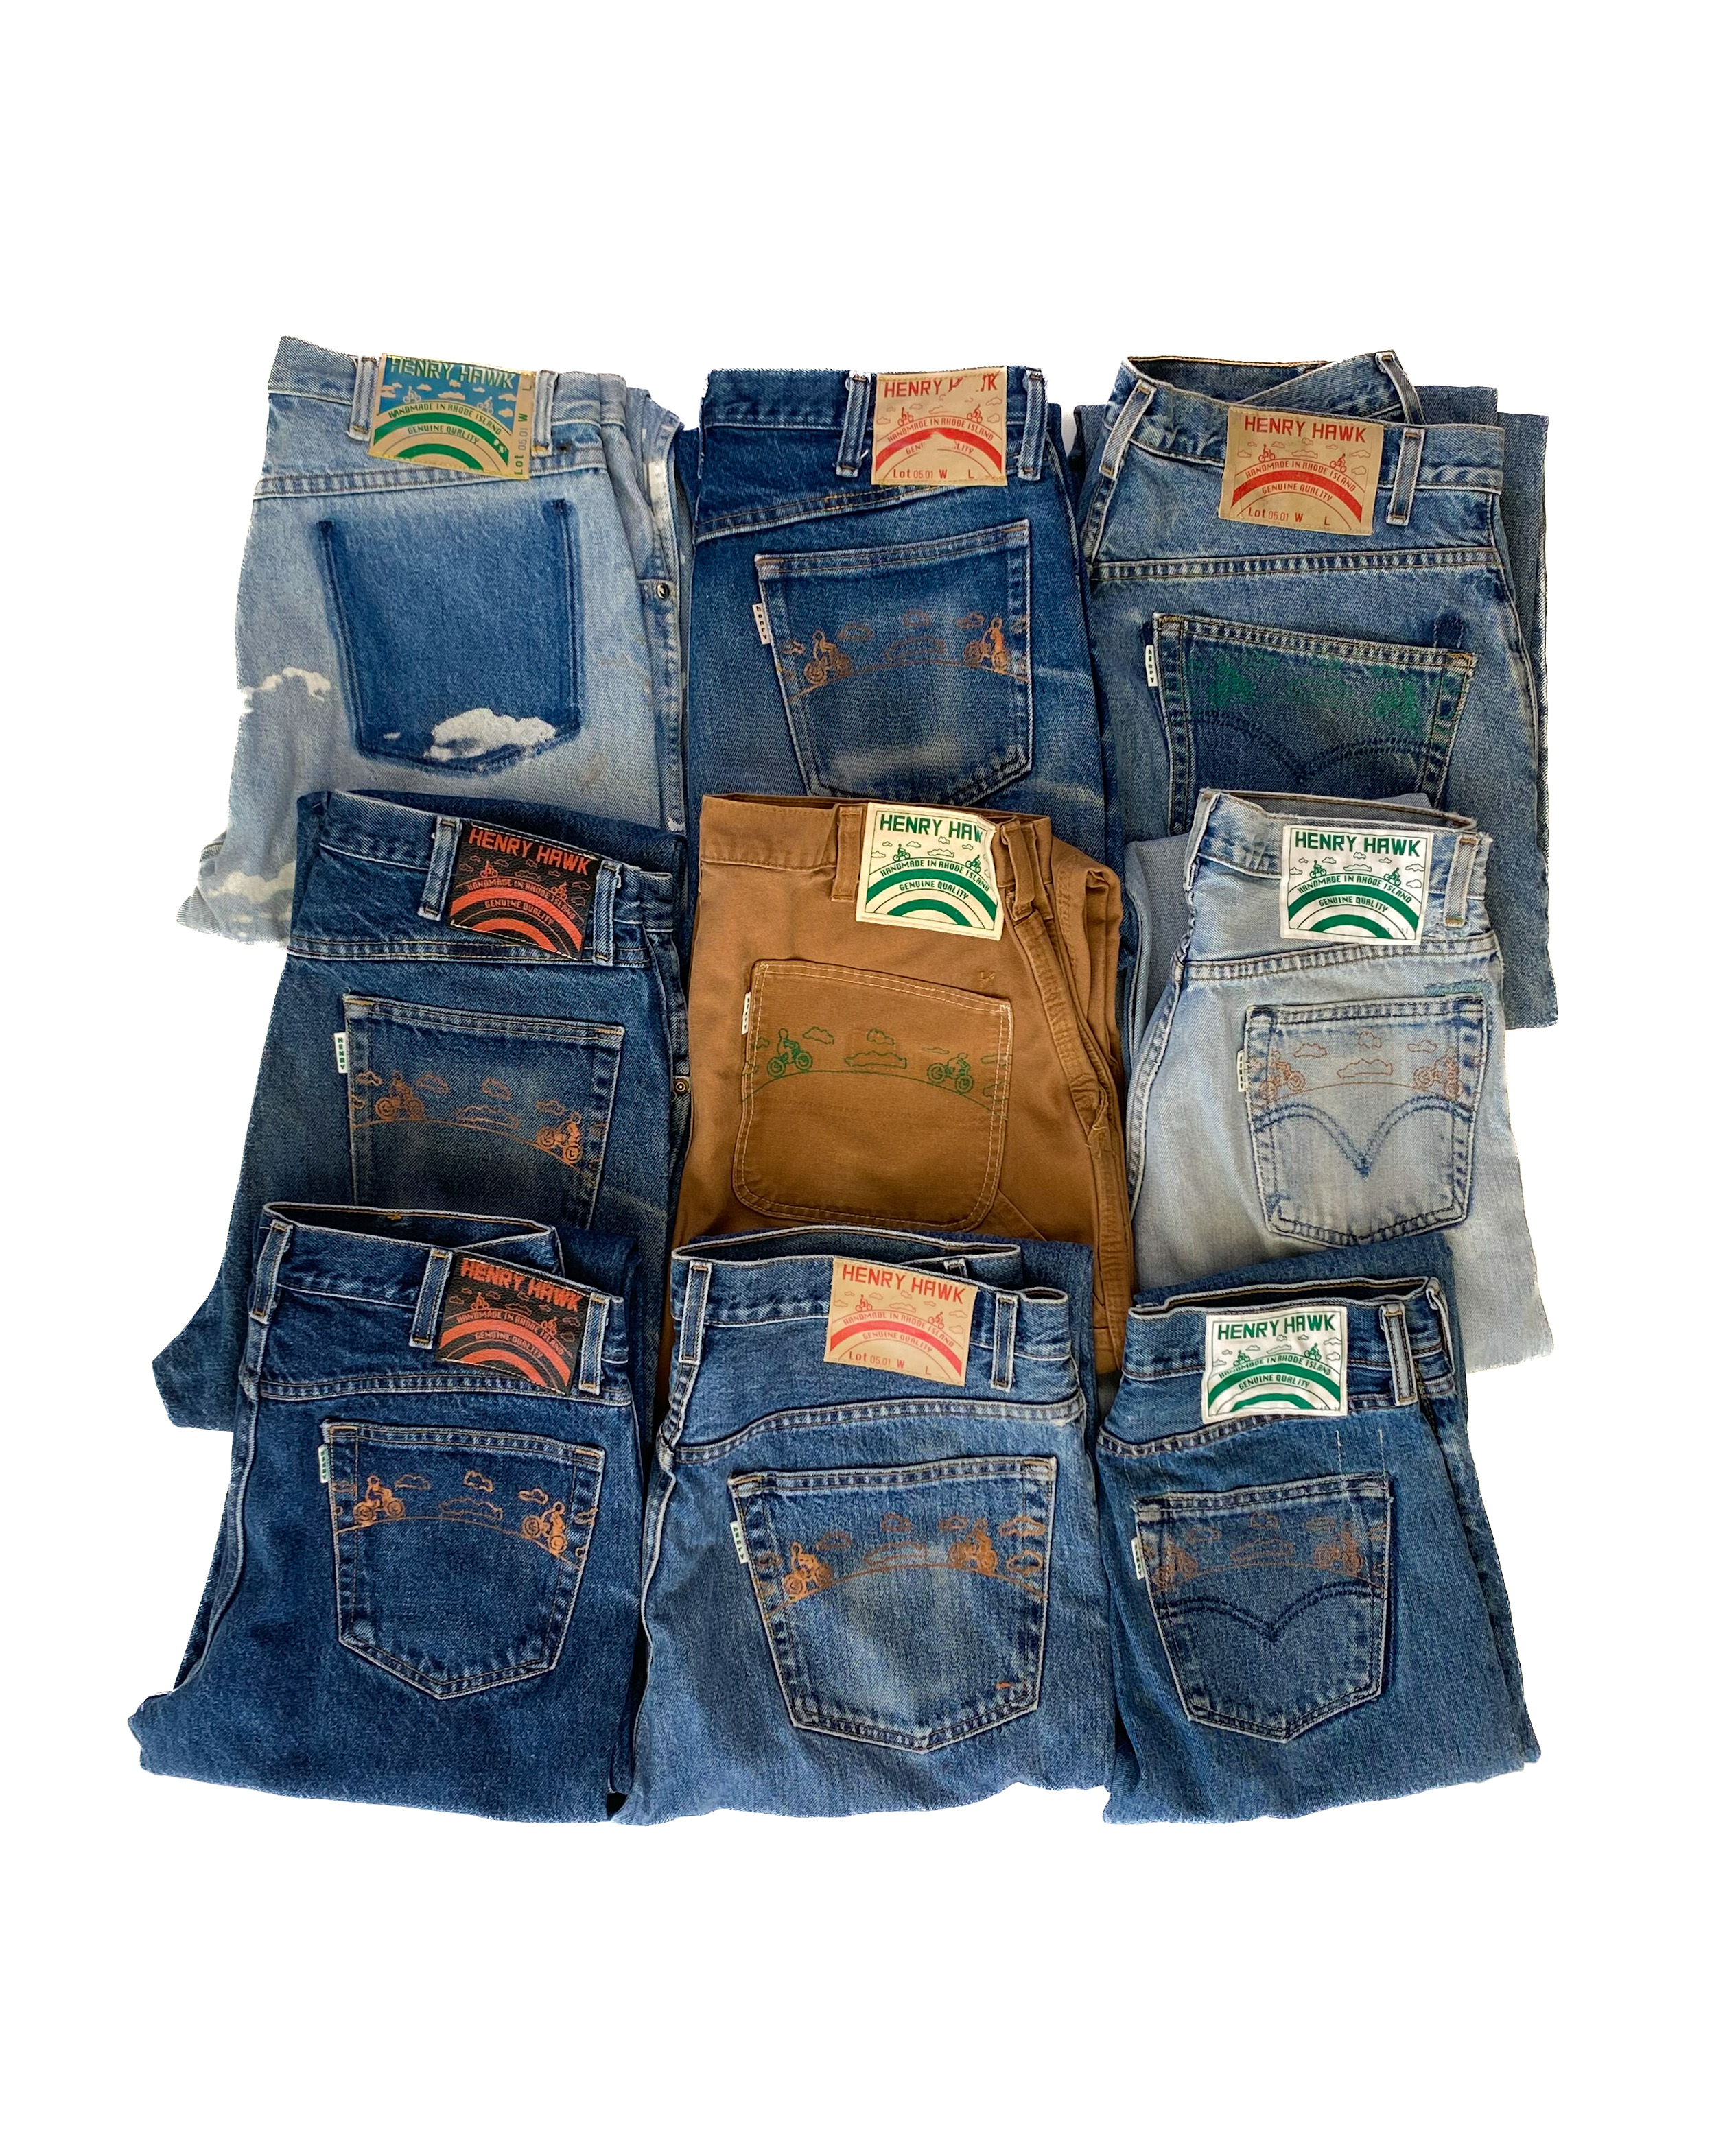 Refurbished jeans - Henry Hawk SHOP